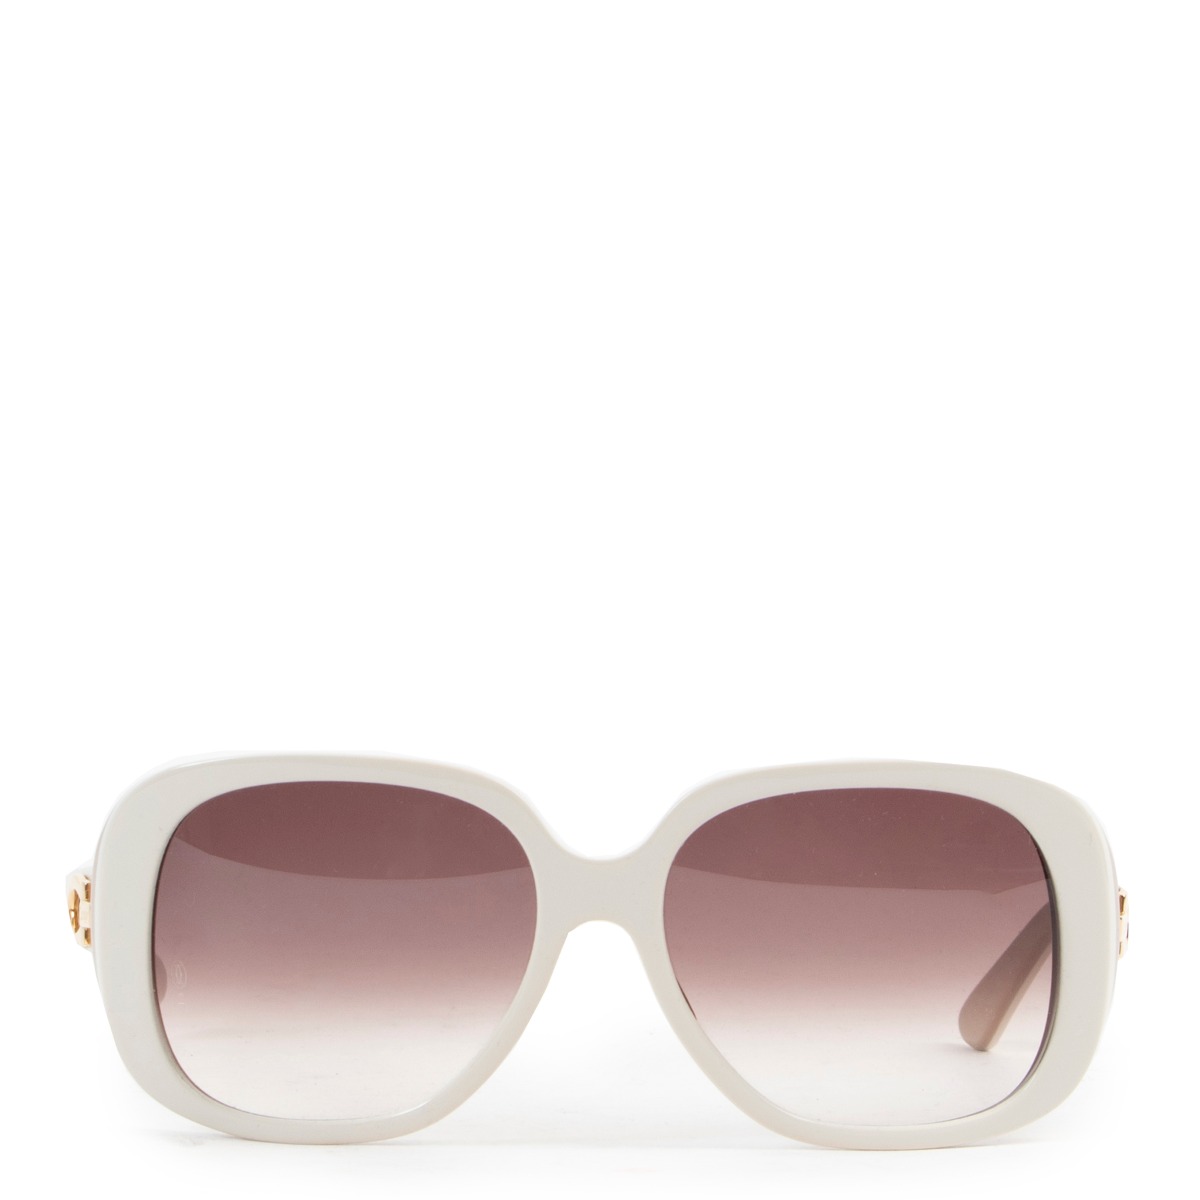 Sentimiento de culpa reaccionar Calma Cartier White Sunglasses ○ Labellov ○ Buy and Sell Authentic Luxury